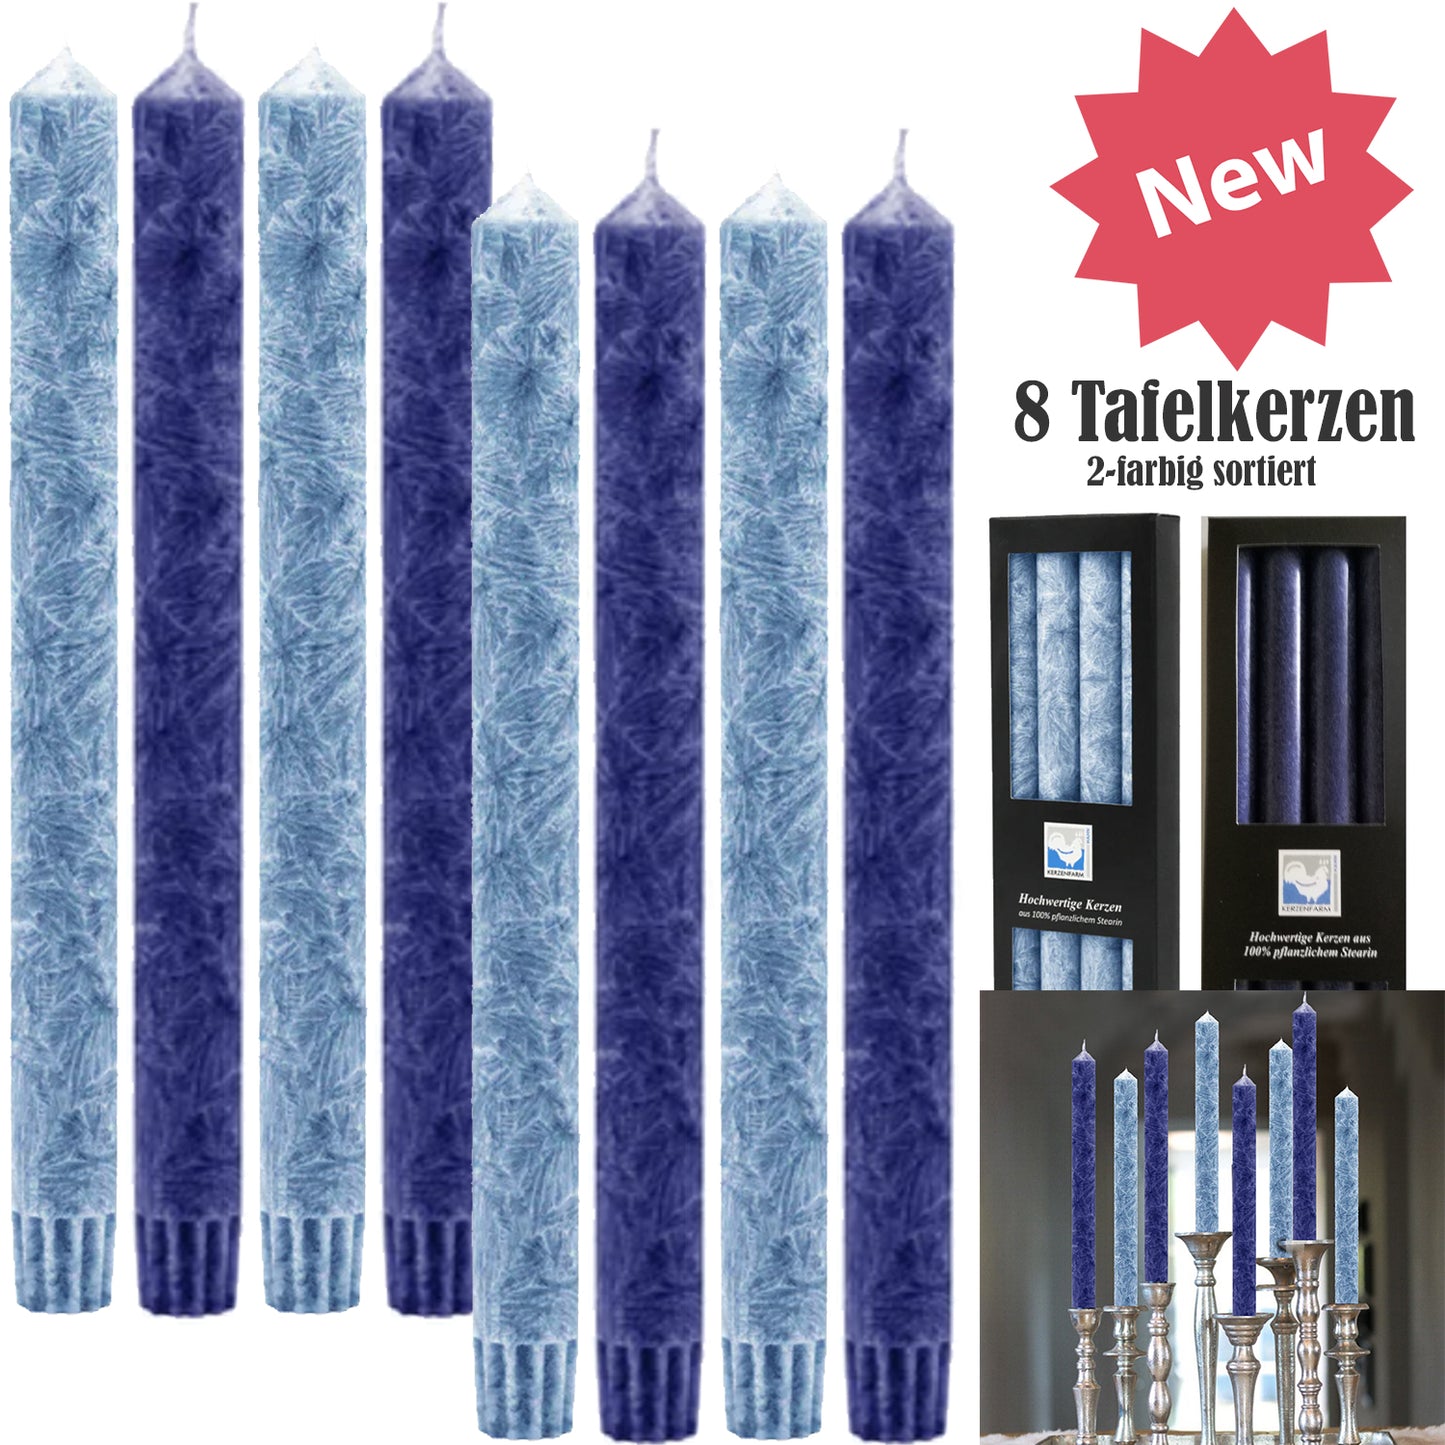 8er Farben Set (2x4) Hahn Stearin-Stabkerze, Ø 2,5 x 25 cm, hellblau & dunkelblau